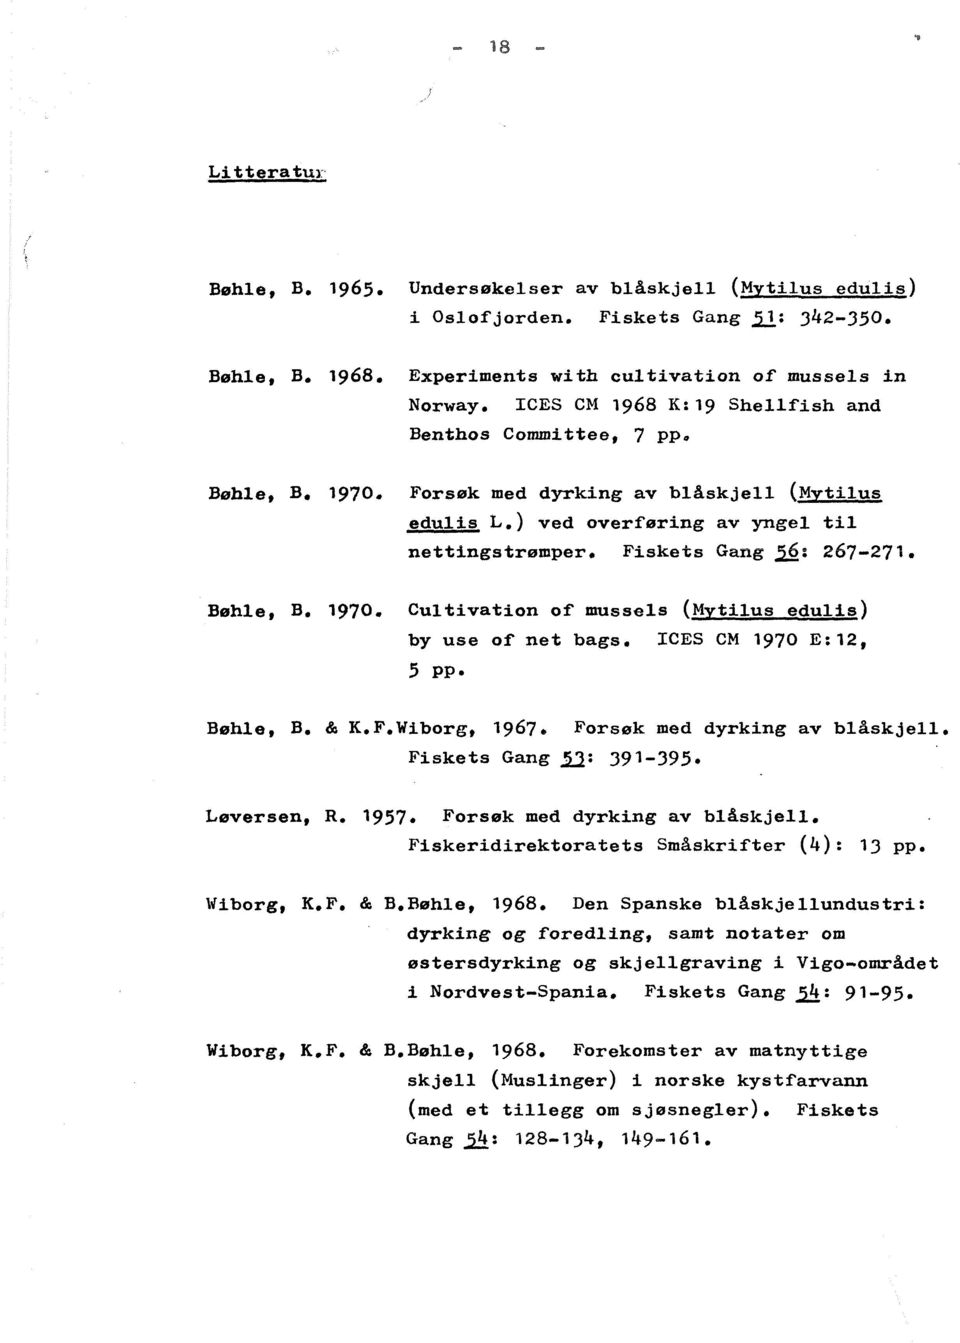 Bøhle, B. '970. Cultivation of mussals (Mytilus edulis) by use of net bags. ICES CM '970 E:12, 5 pp. Bøhle, B. & K.F.Wiborg, 1967. Fiskets Gang 11: 391-395. Forsøk med dyrking av blåskjell.